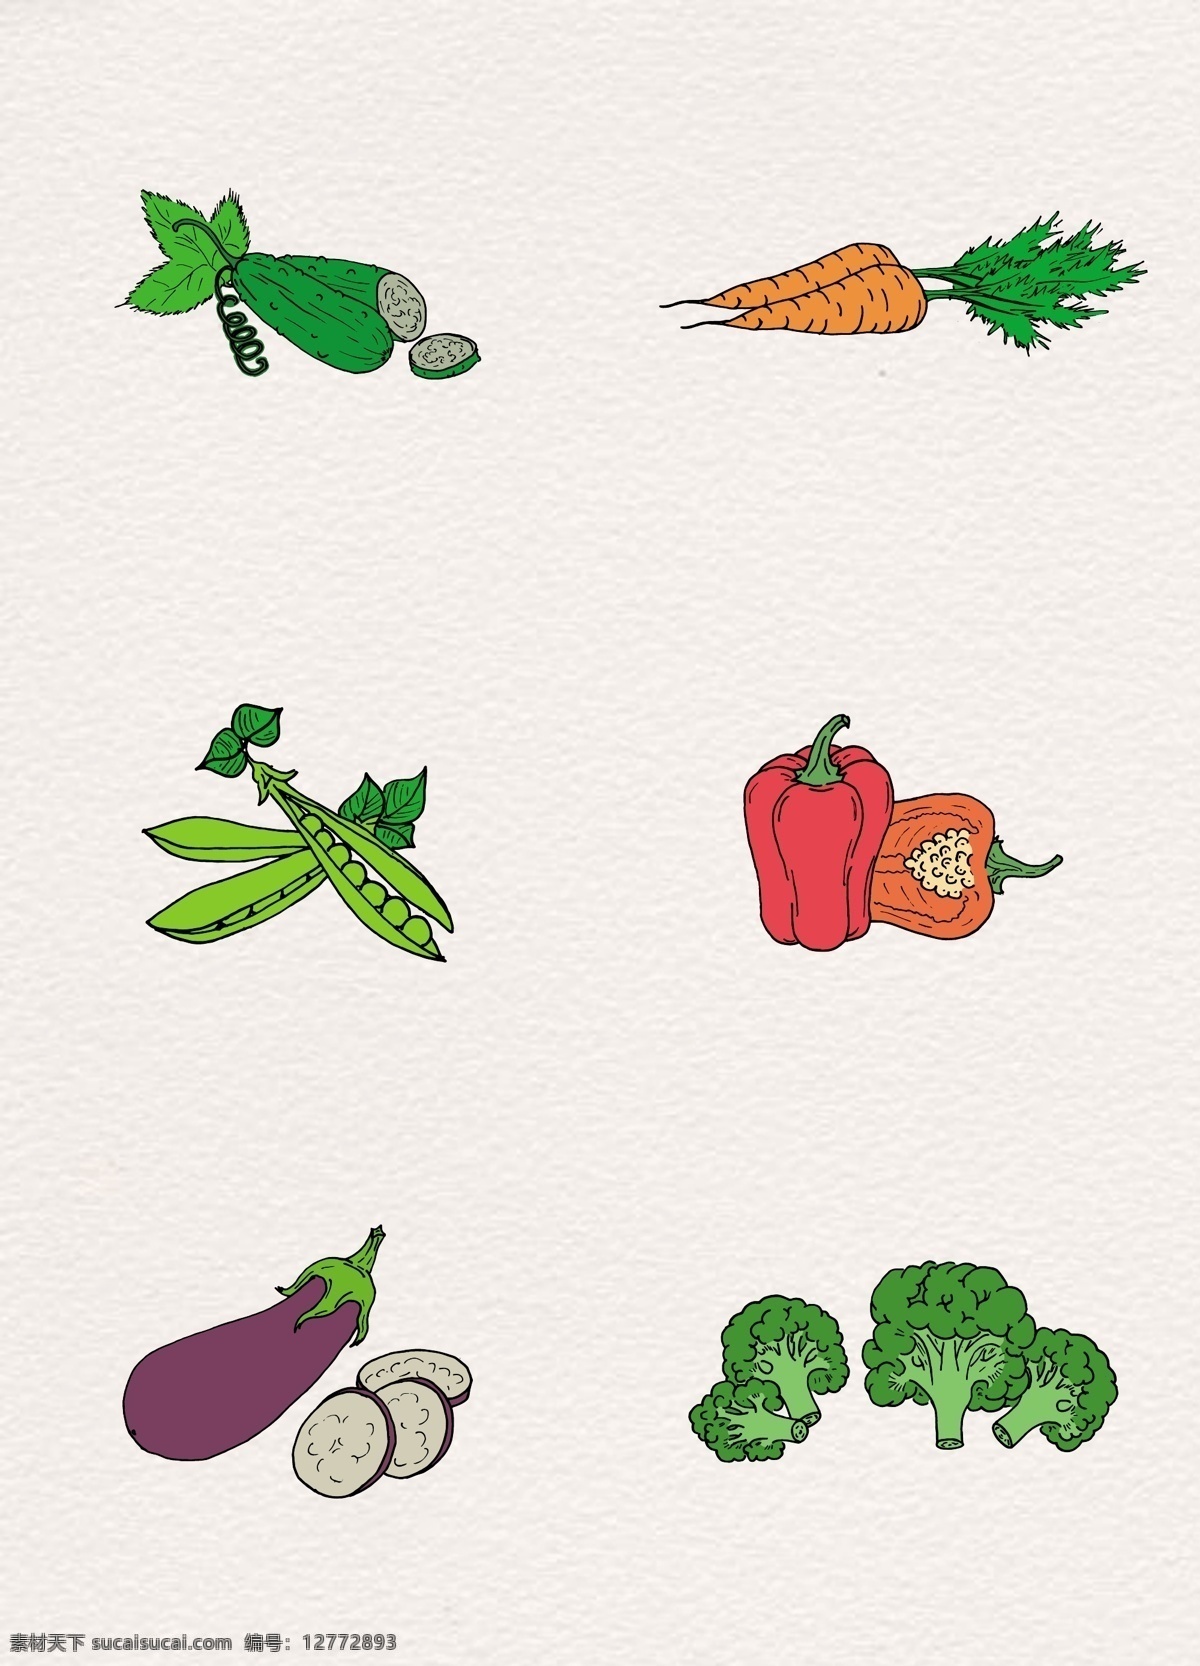 彩绘 素食 蔬菜 矢量 矢量图 黄瓜 胡萝卜 西兰花 水果 卡通食物 卡通蔬菜 手绘蔬菜 豌豆 红椒 茄子